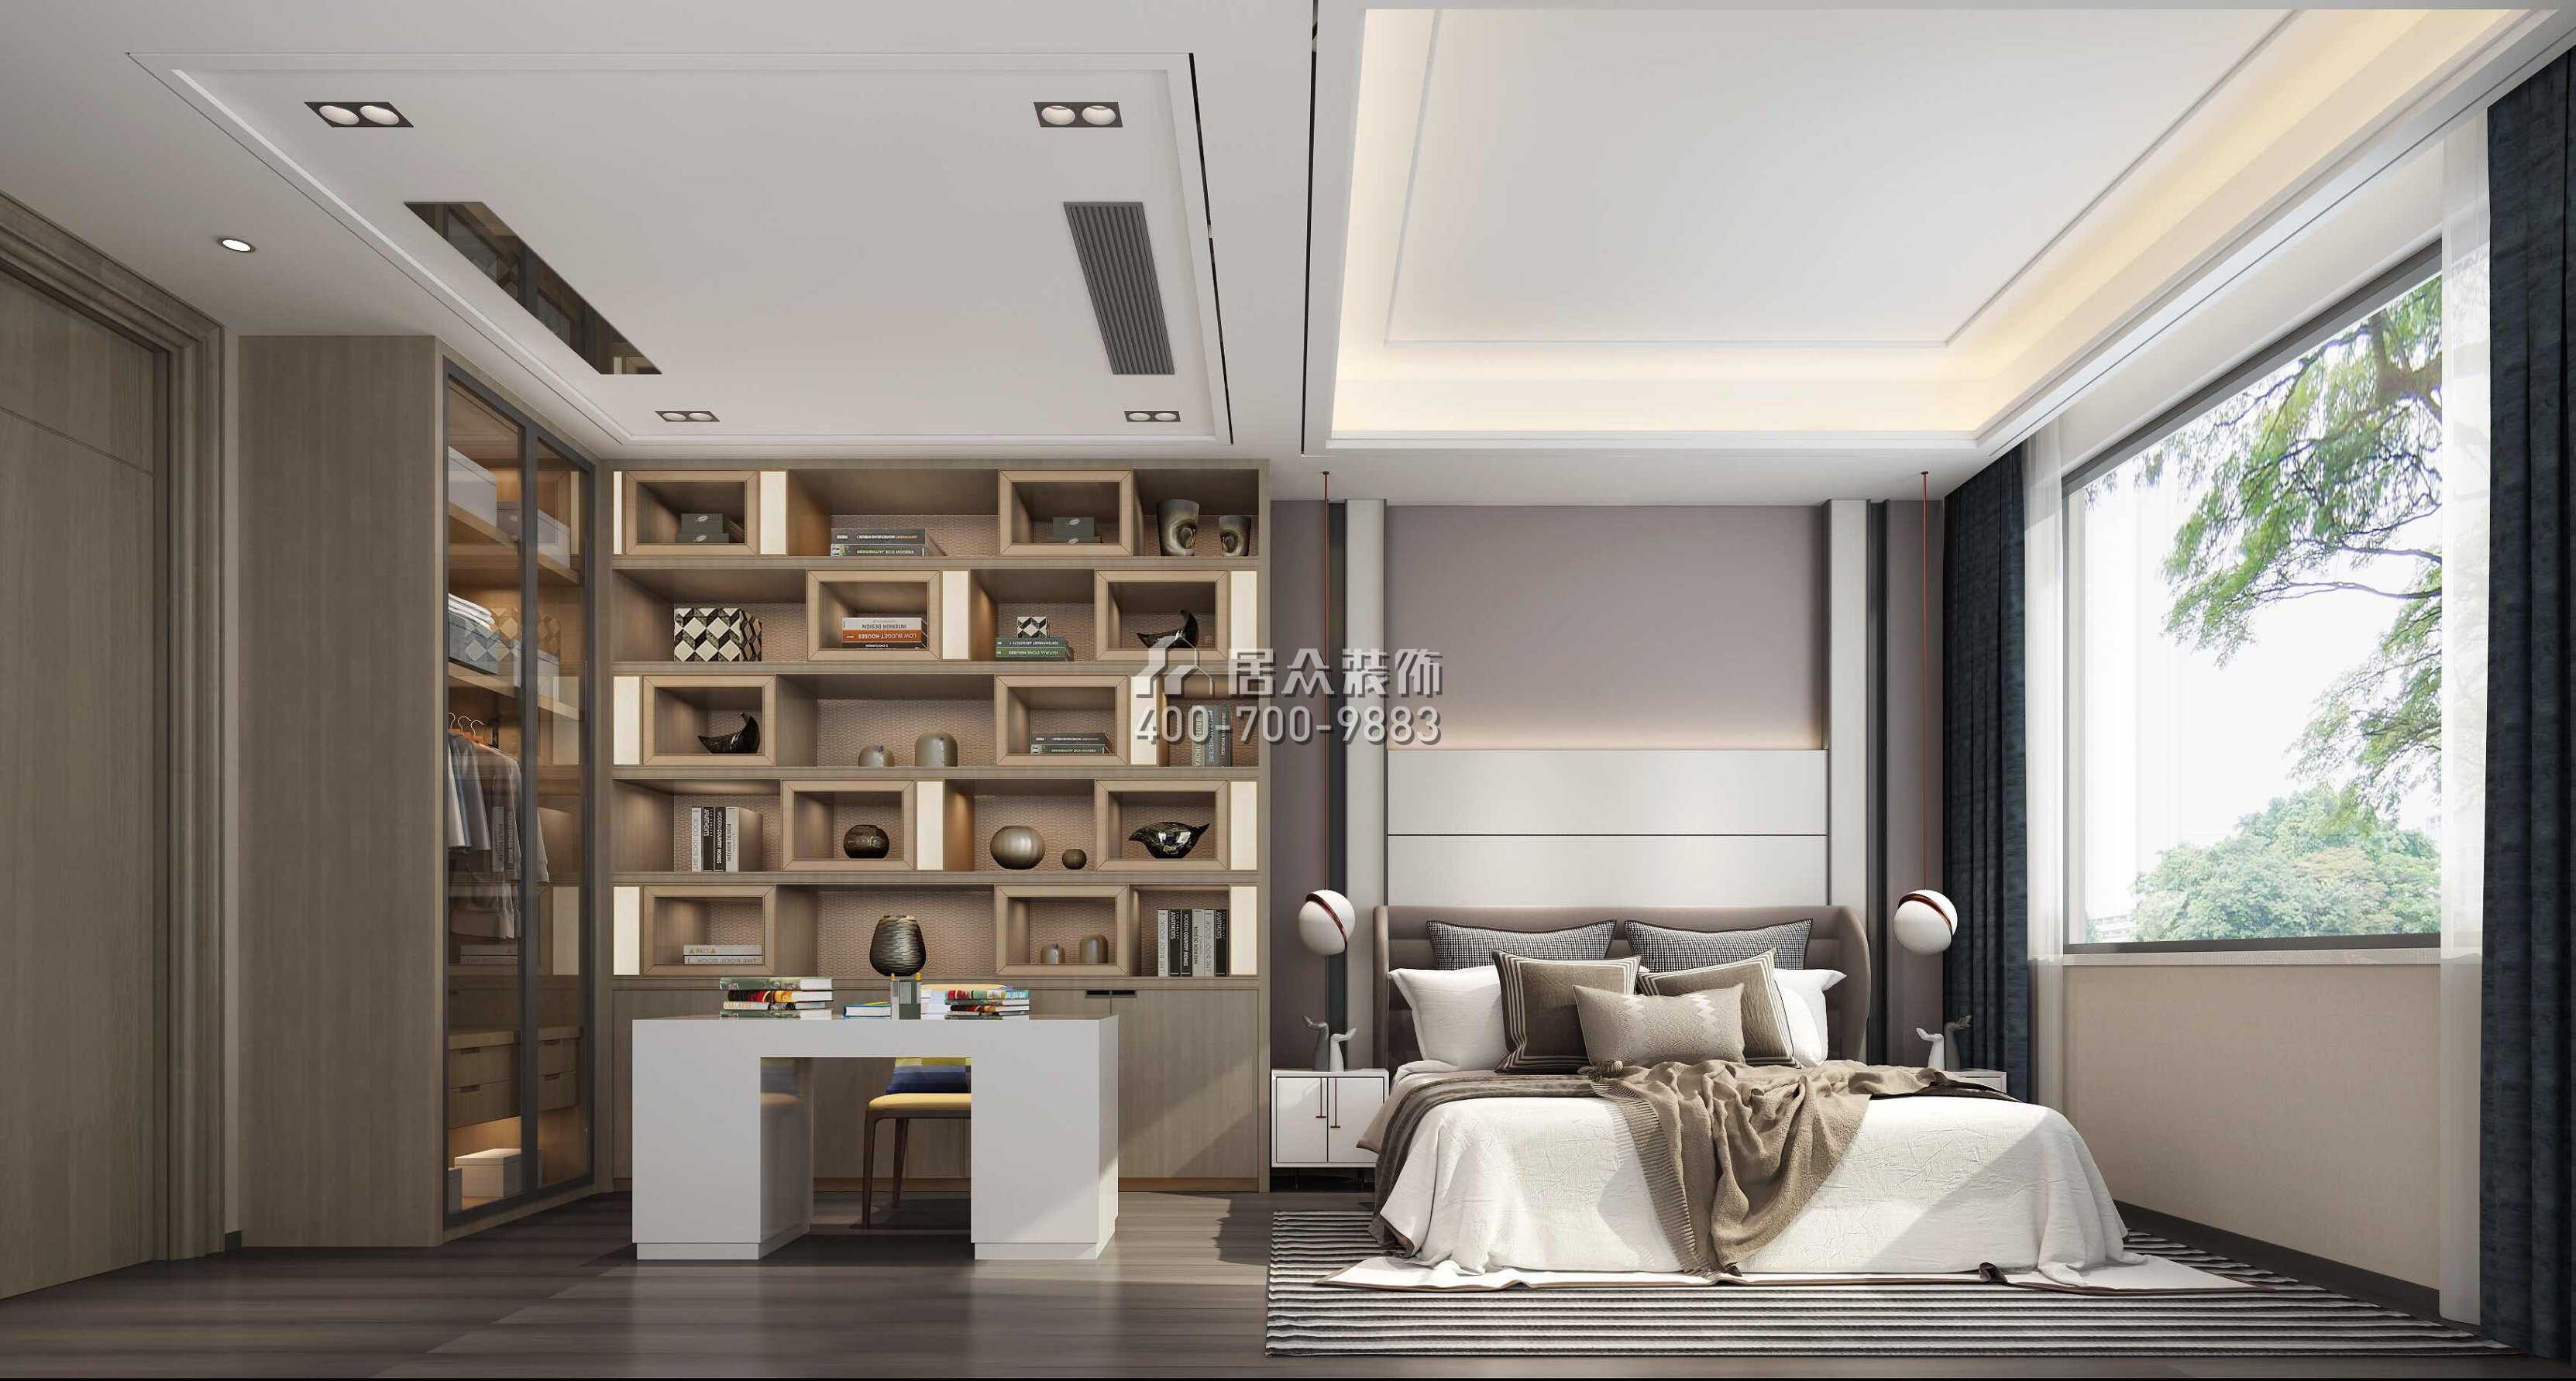 宝湖山庄450平方米现代简约风格别墅户型卧室装修效果图